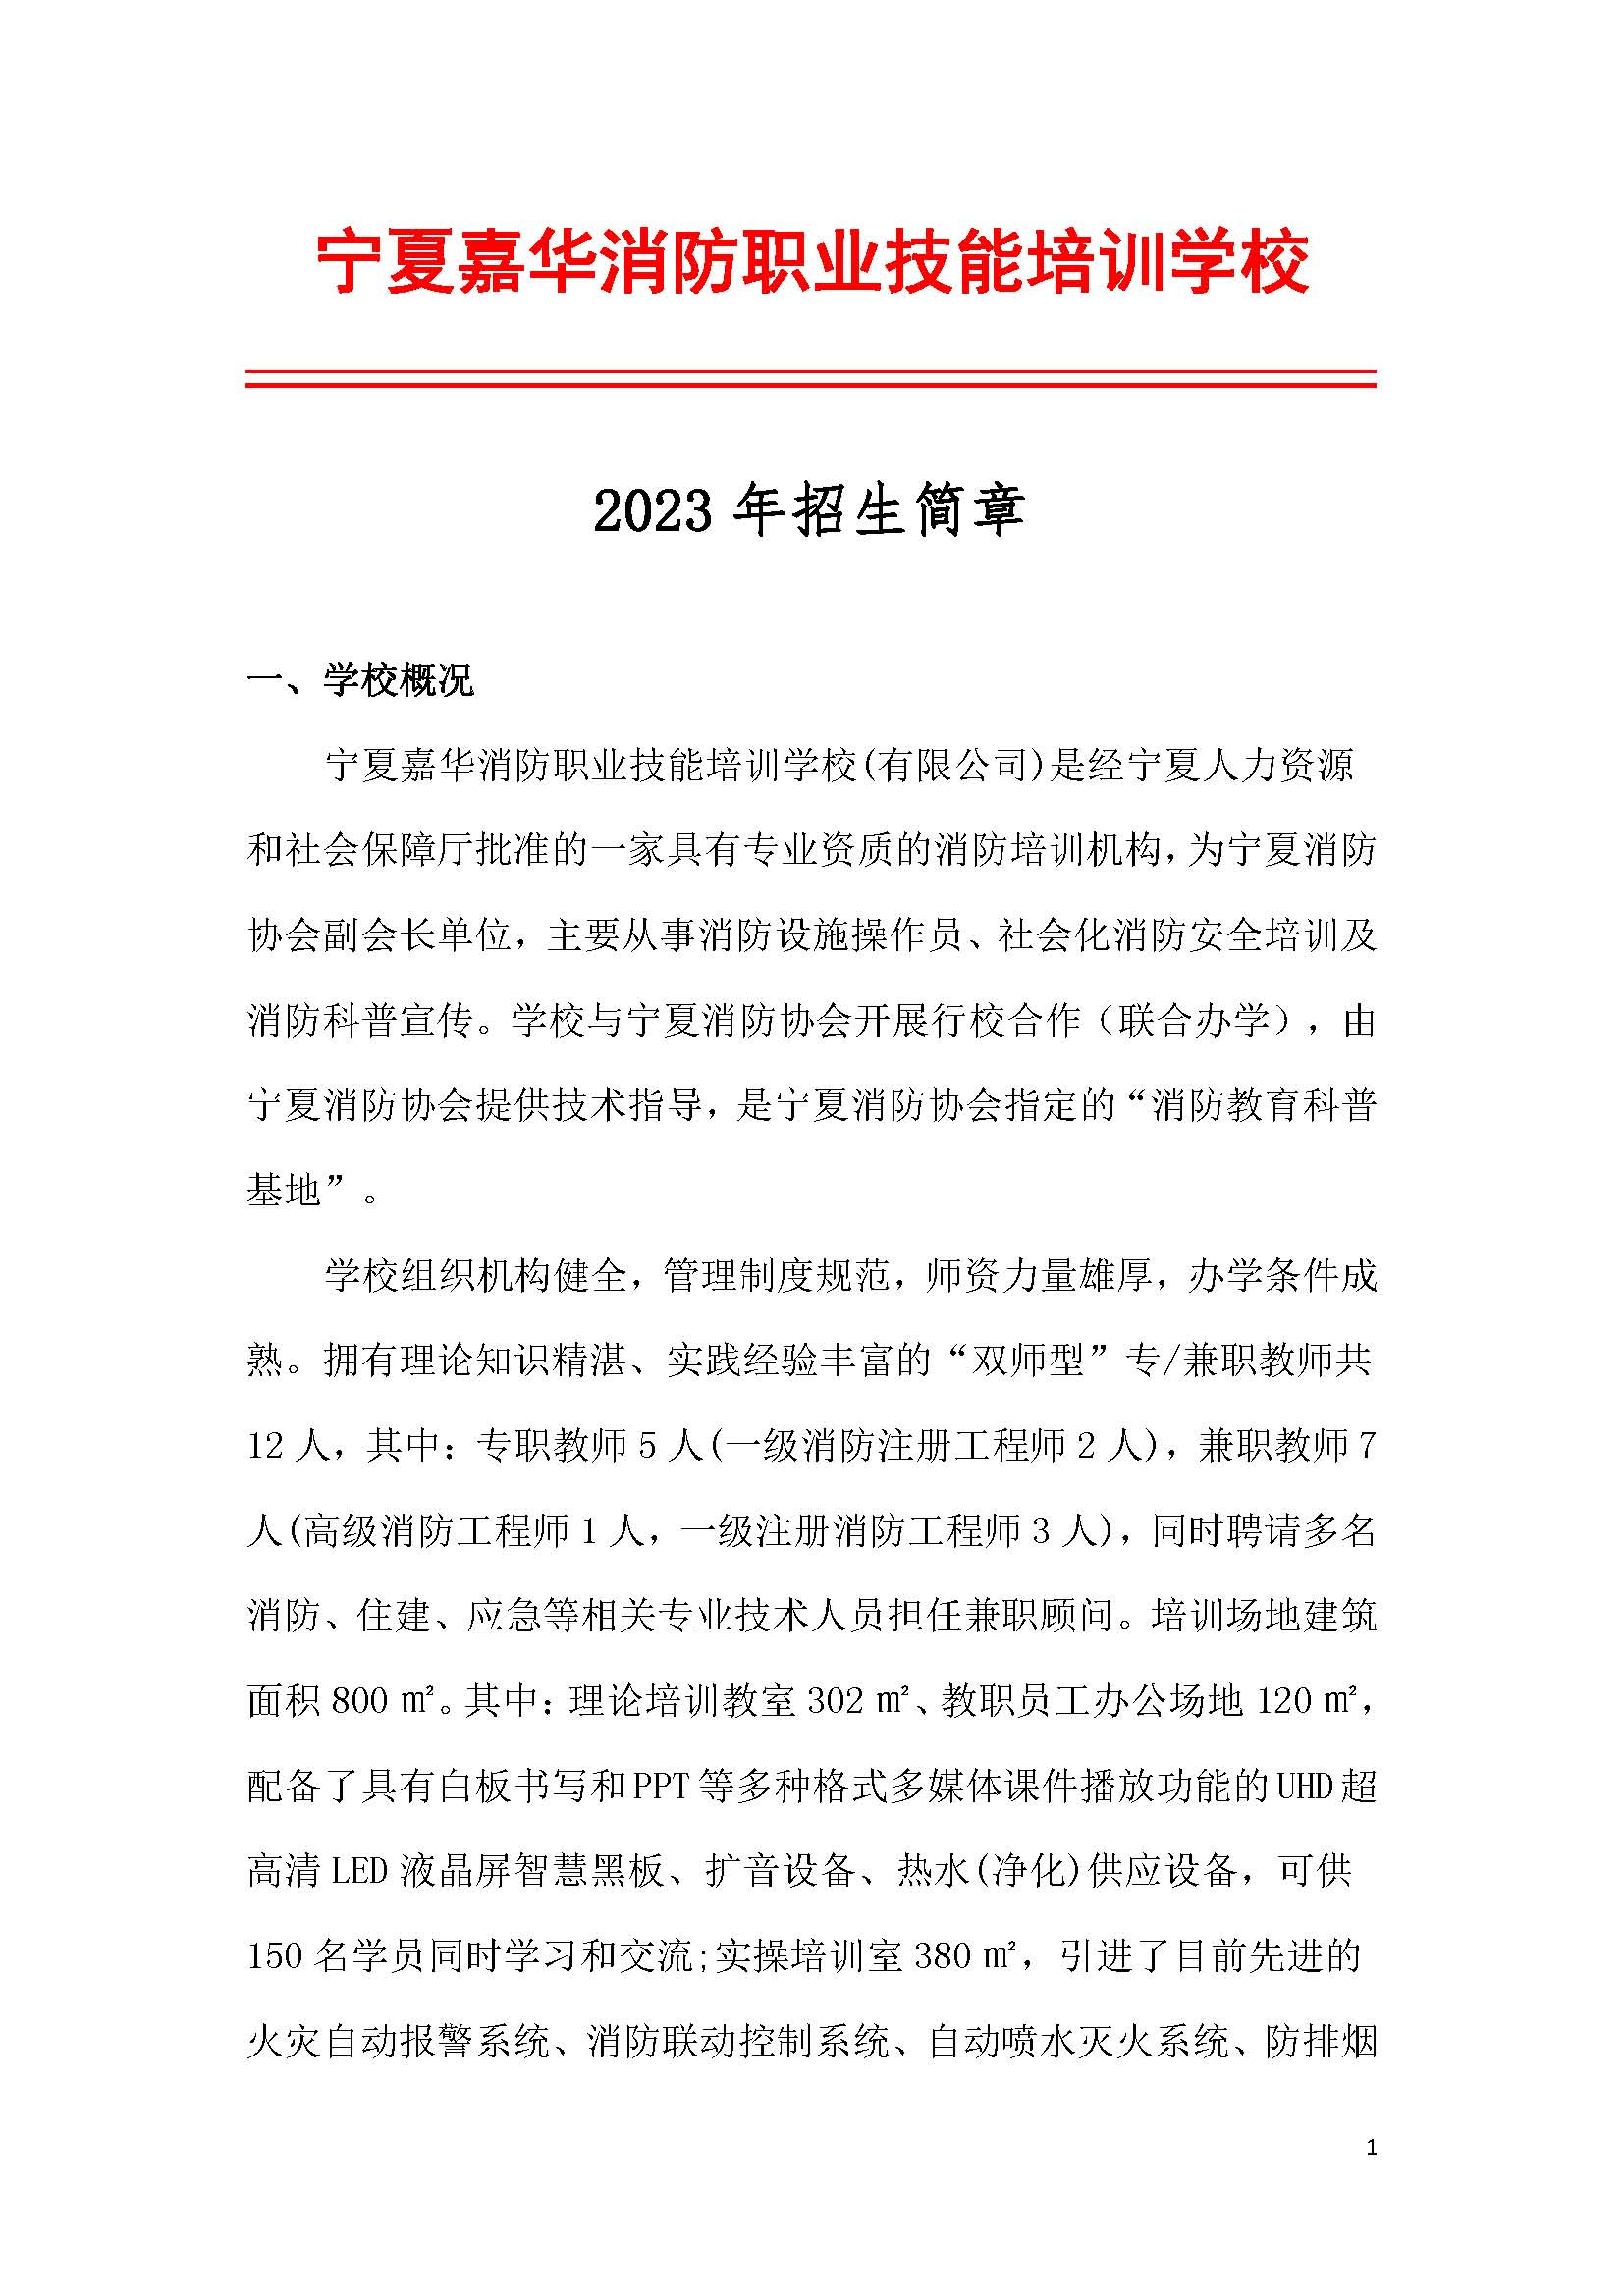 宁夏嘉华消防职业技能培训学校2023年招生简章